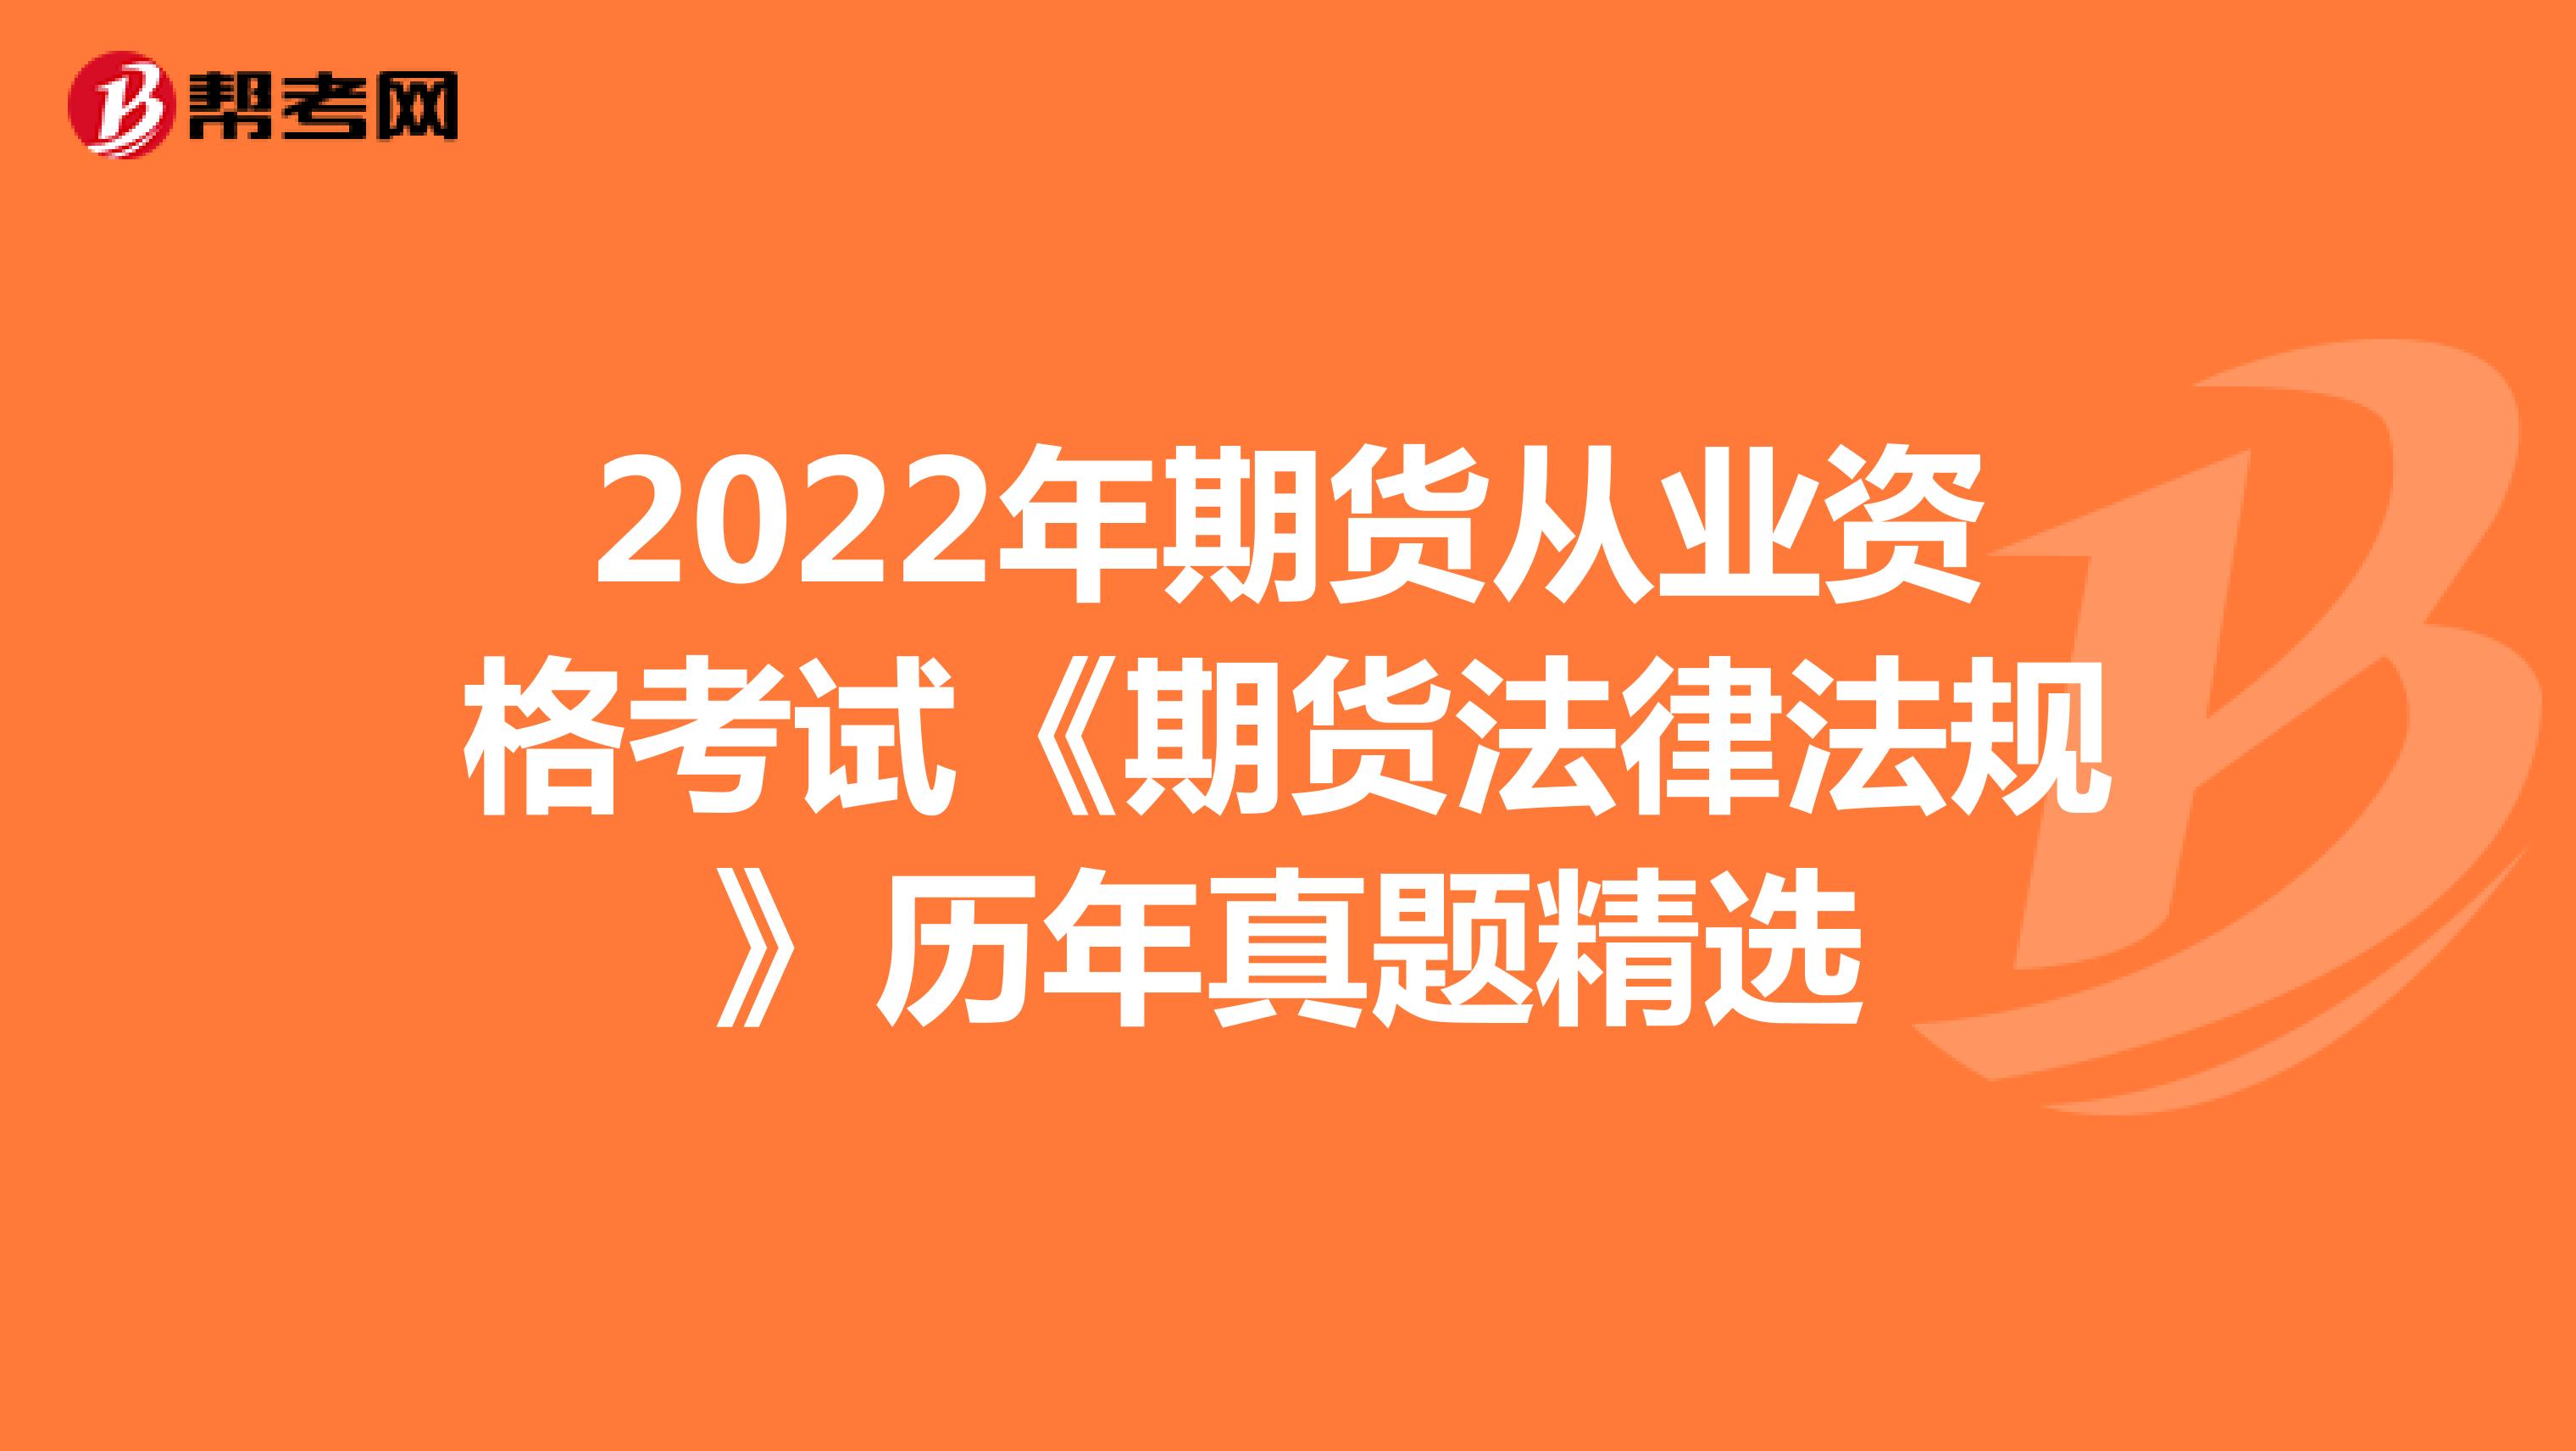 2022年期货从业资格考试《期货法律法规》历年真题精选